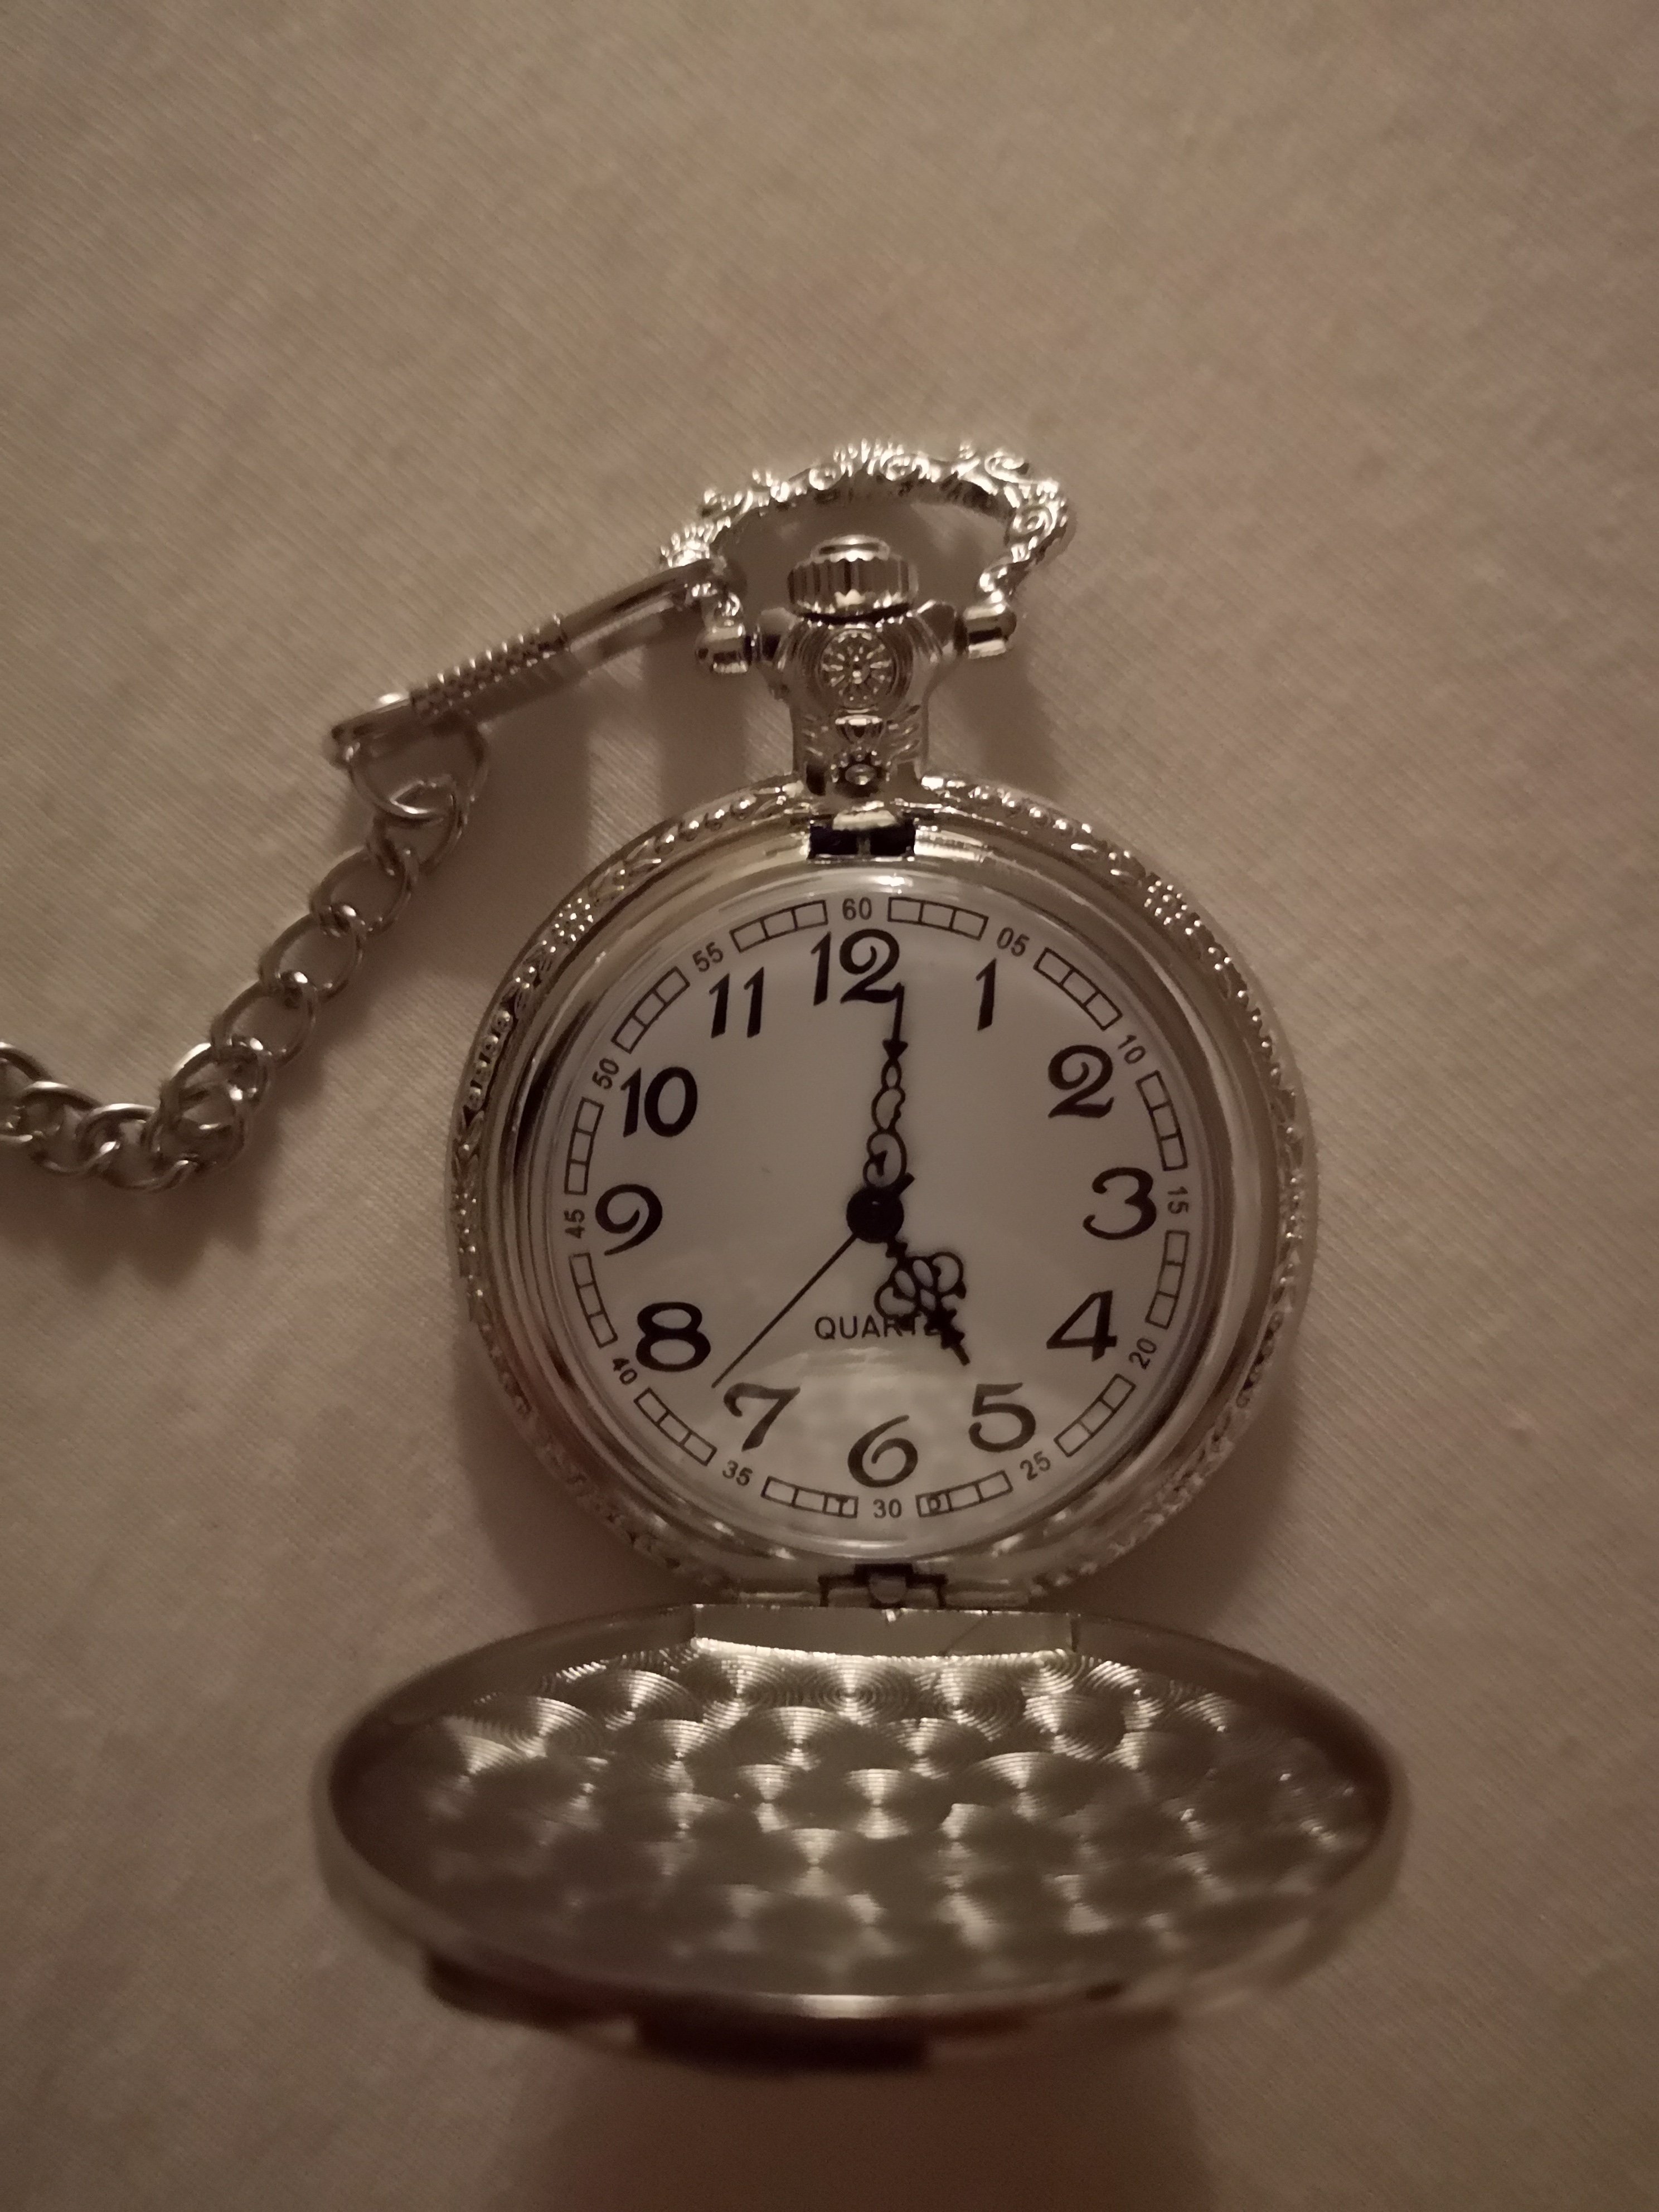 Nieuw (goedkoop) zakhorloge tijd verzetten? - Algemene Horlogepraat - Horlogeforum.nl het forum voor liefhebbers van horloges